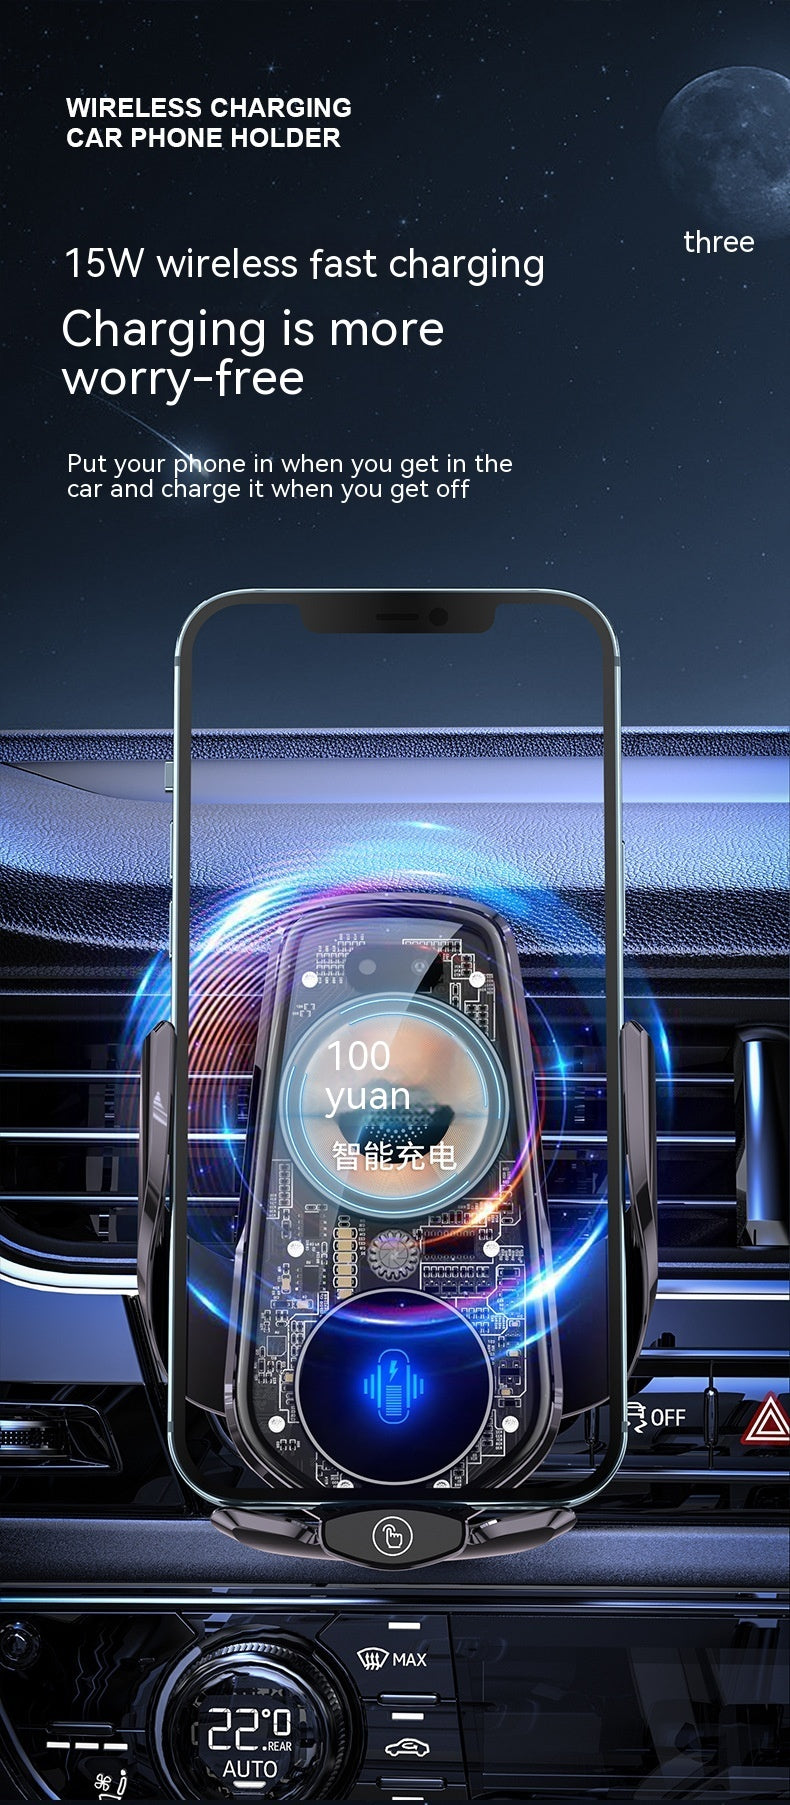 Transparentes und kreatives Line Design Car drahtloses Ladegerät Mobiltelefonhalter Automatische Öffnungs- und Schließung der Navigationsauto -Versorgung